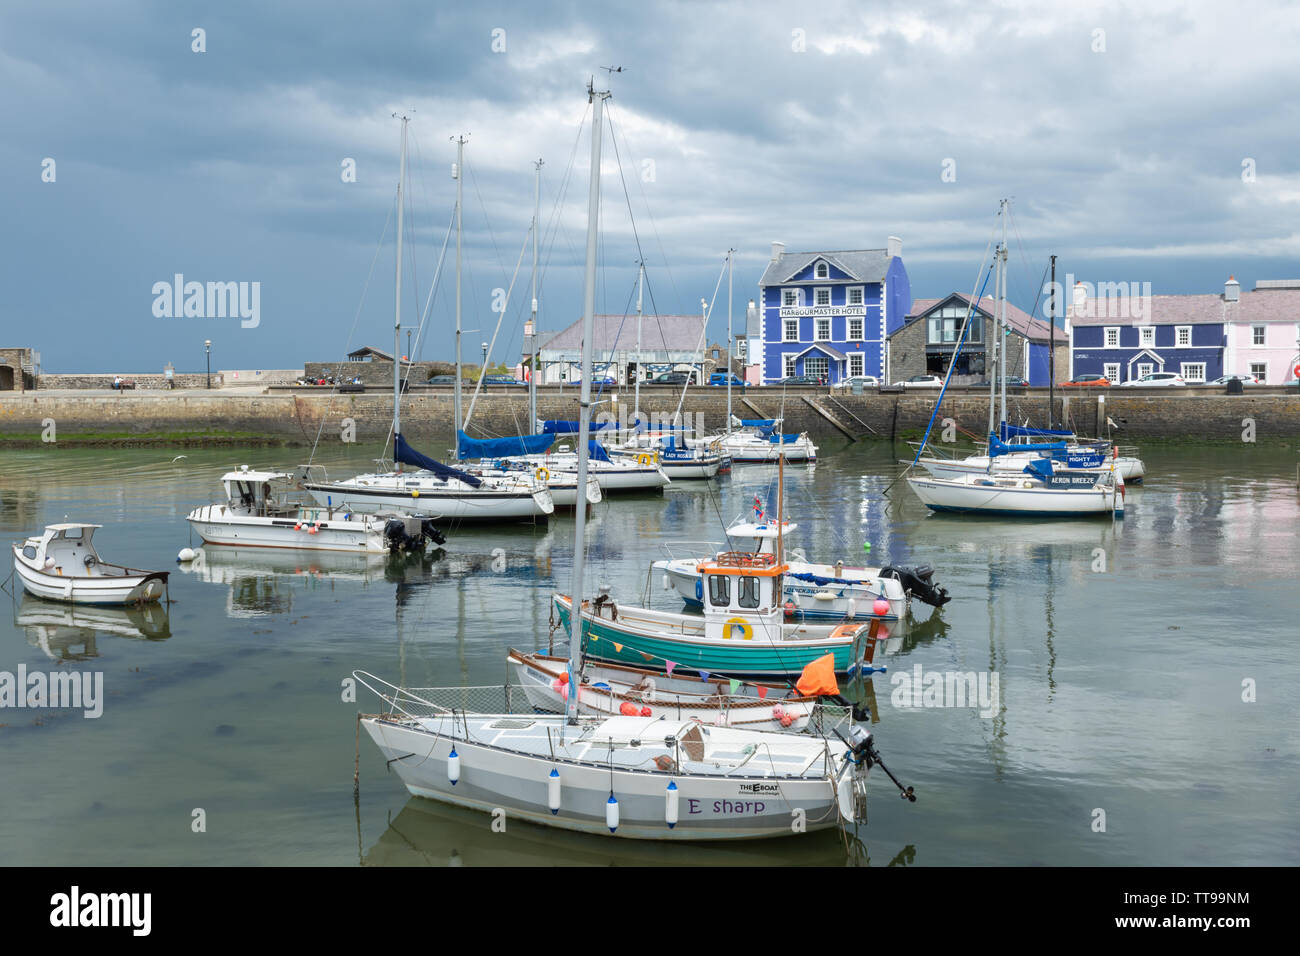 Le port pittoresque et charmante ville de Aberaeron sur la côte de la Baie de Cardigan dans Ceredigion, pays de Galles, Royaume-Uni Banque D'Images